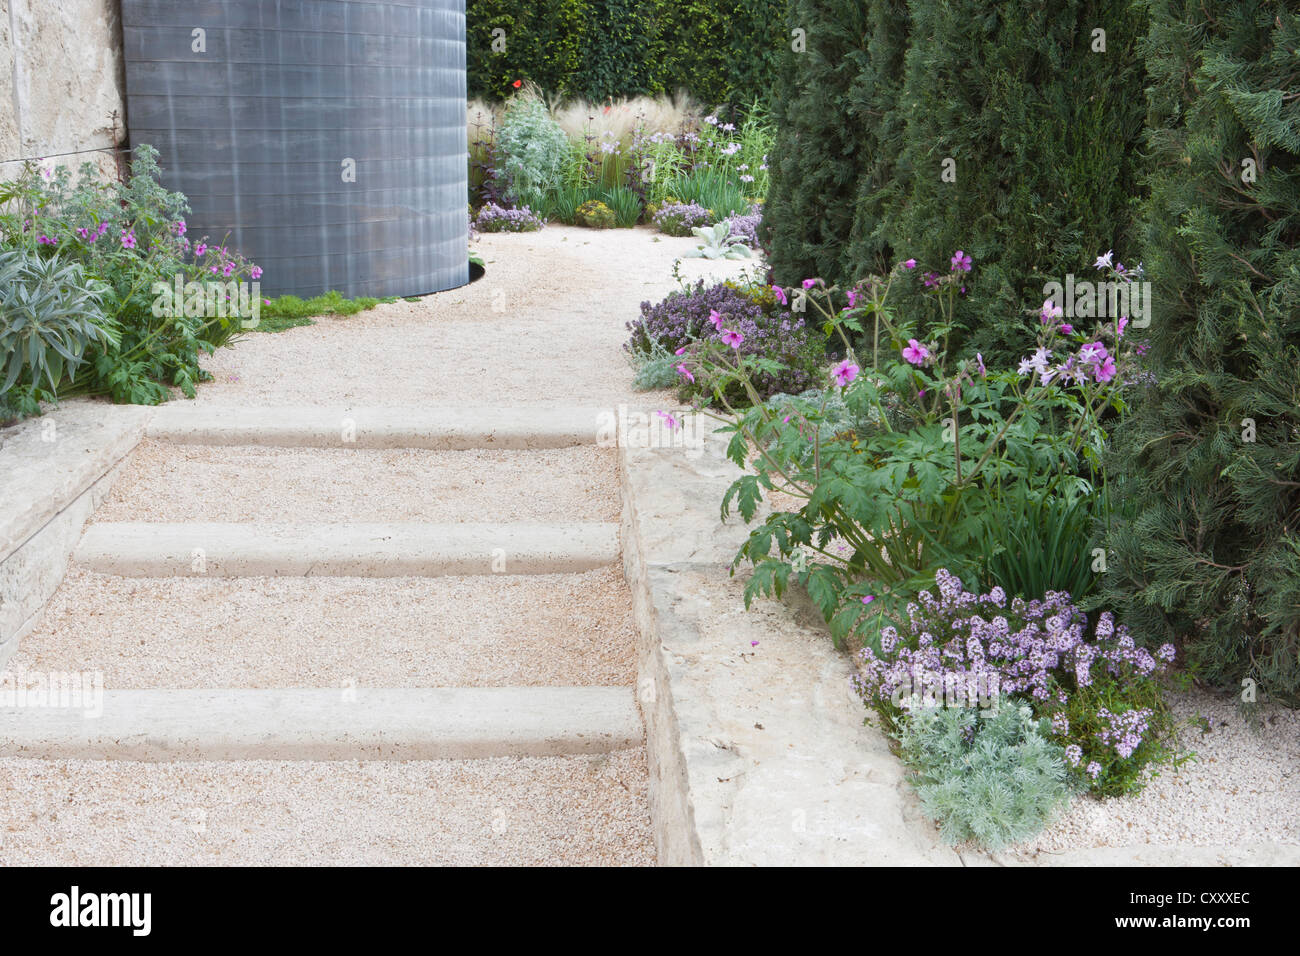 Jardin moderne contemporain en gravier avec marches en pierre et bordures de fleurs et herbes ornementales Chelsea RHS Flower show Gardens Londres UK Banque D'Images